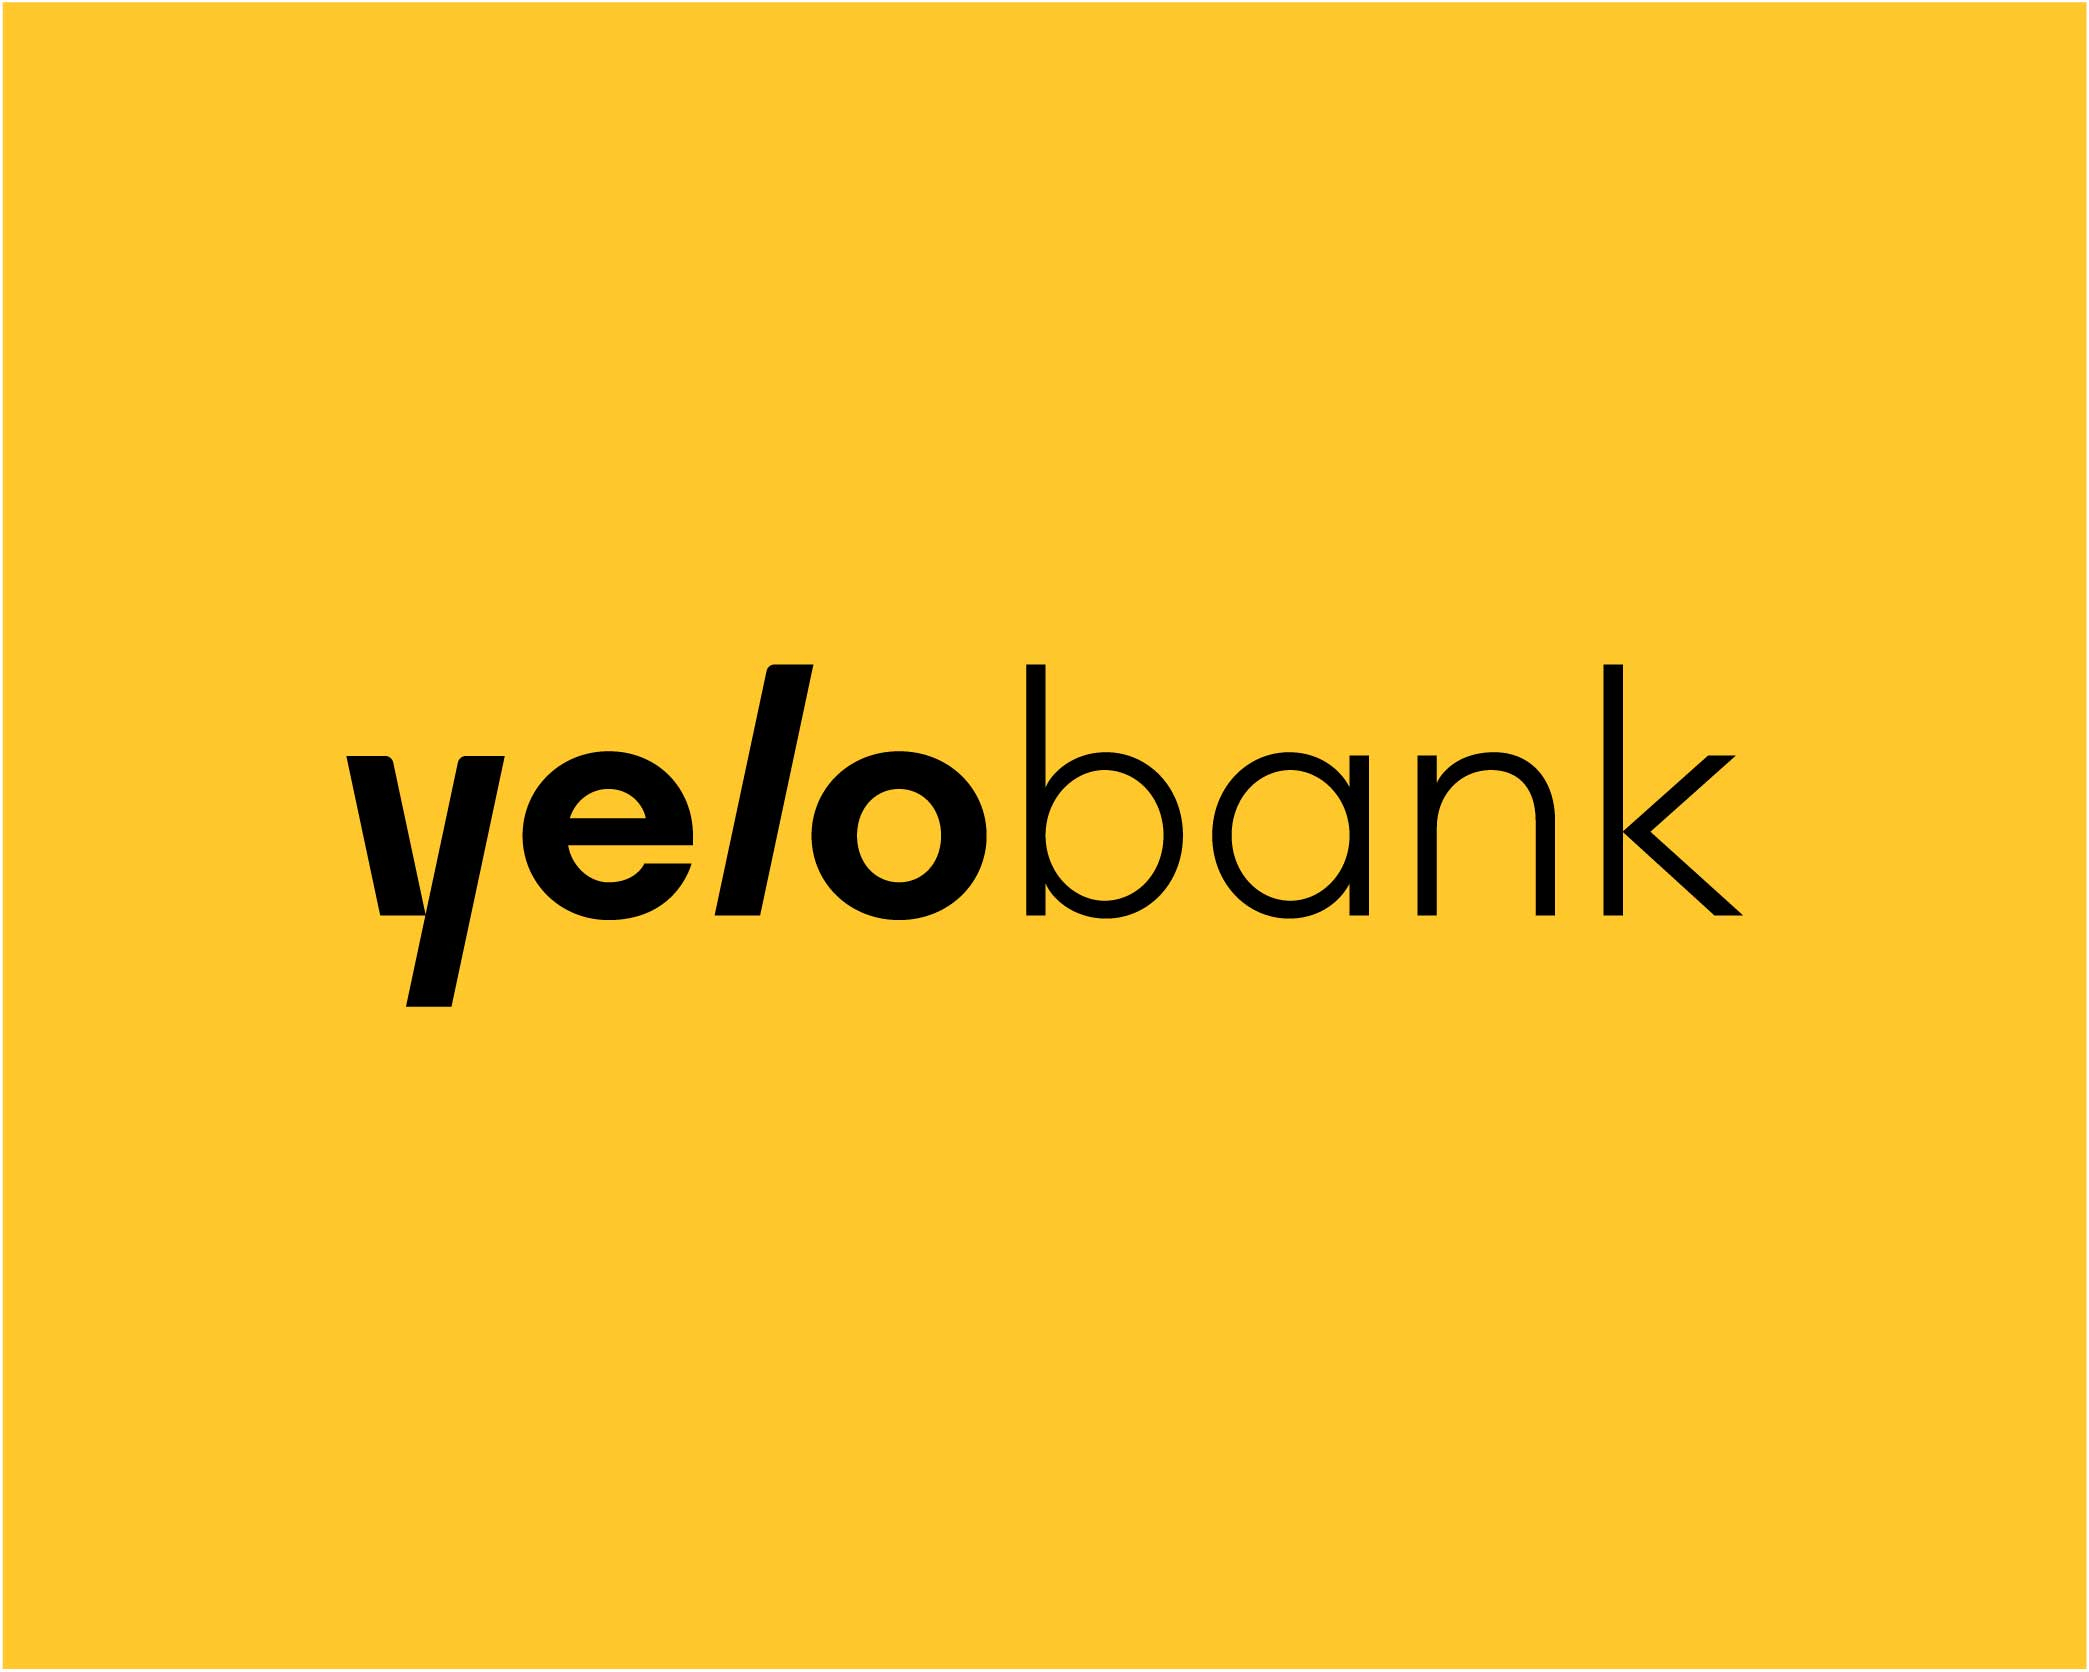 Yelo Bank уволил двух сотрудников за злоупотребление должностными обязанностями